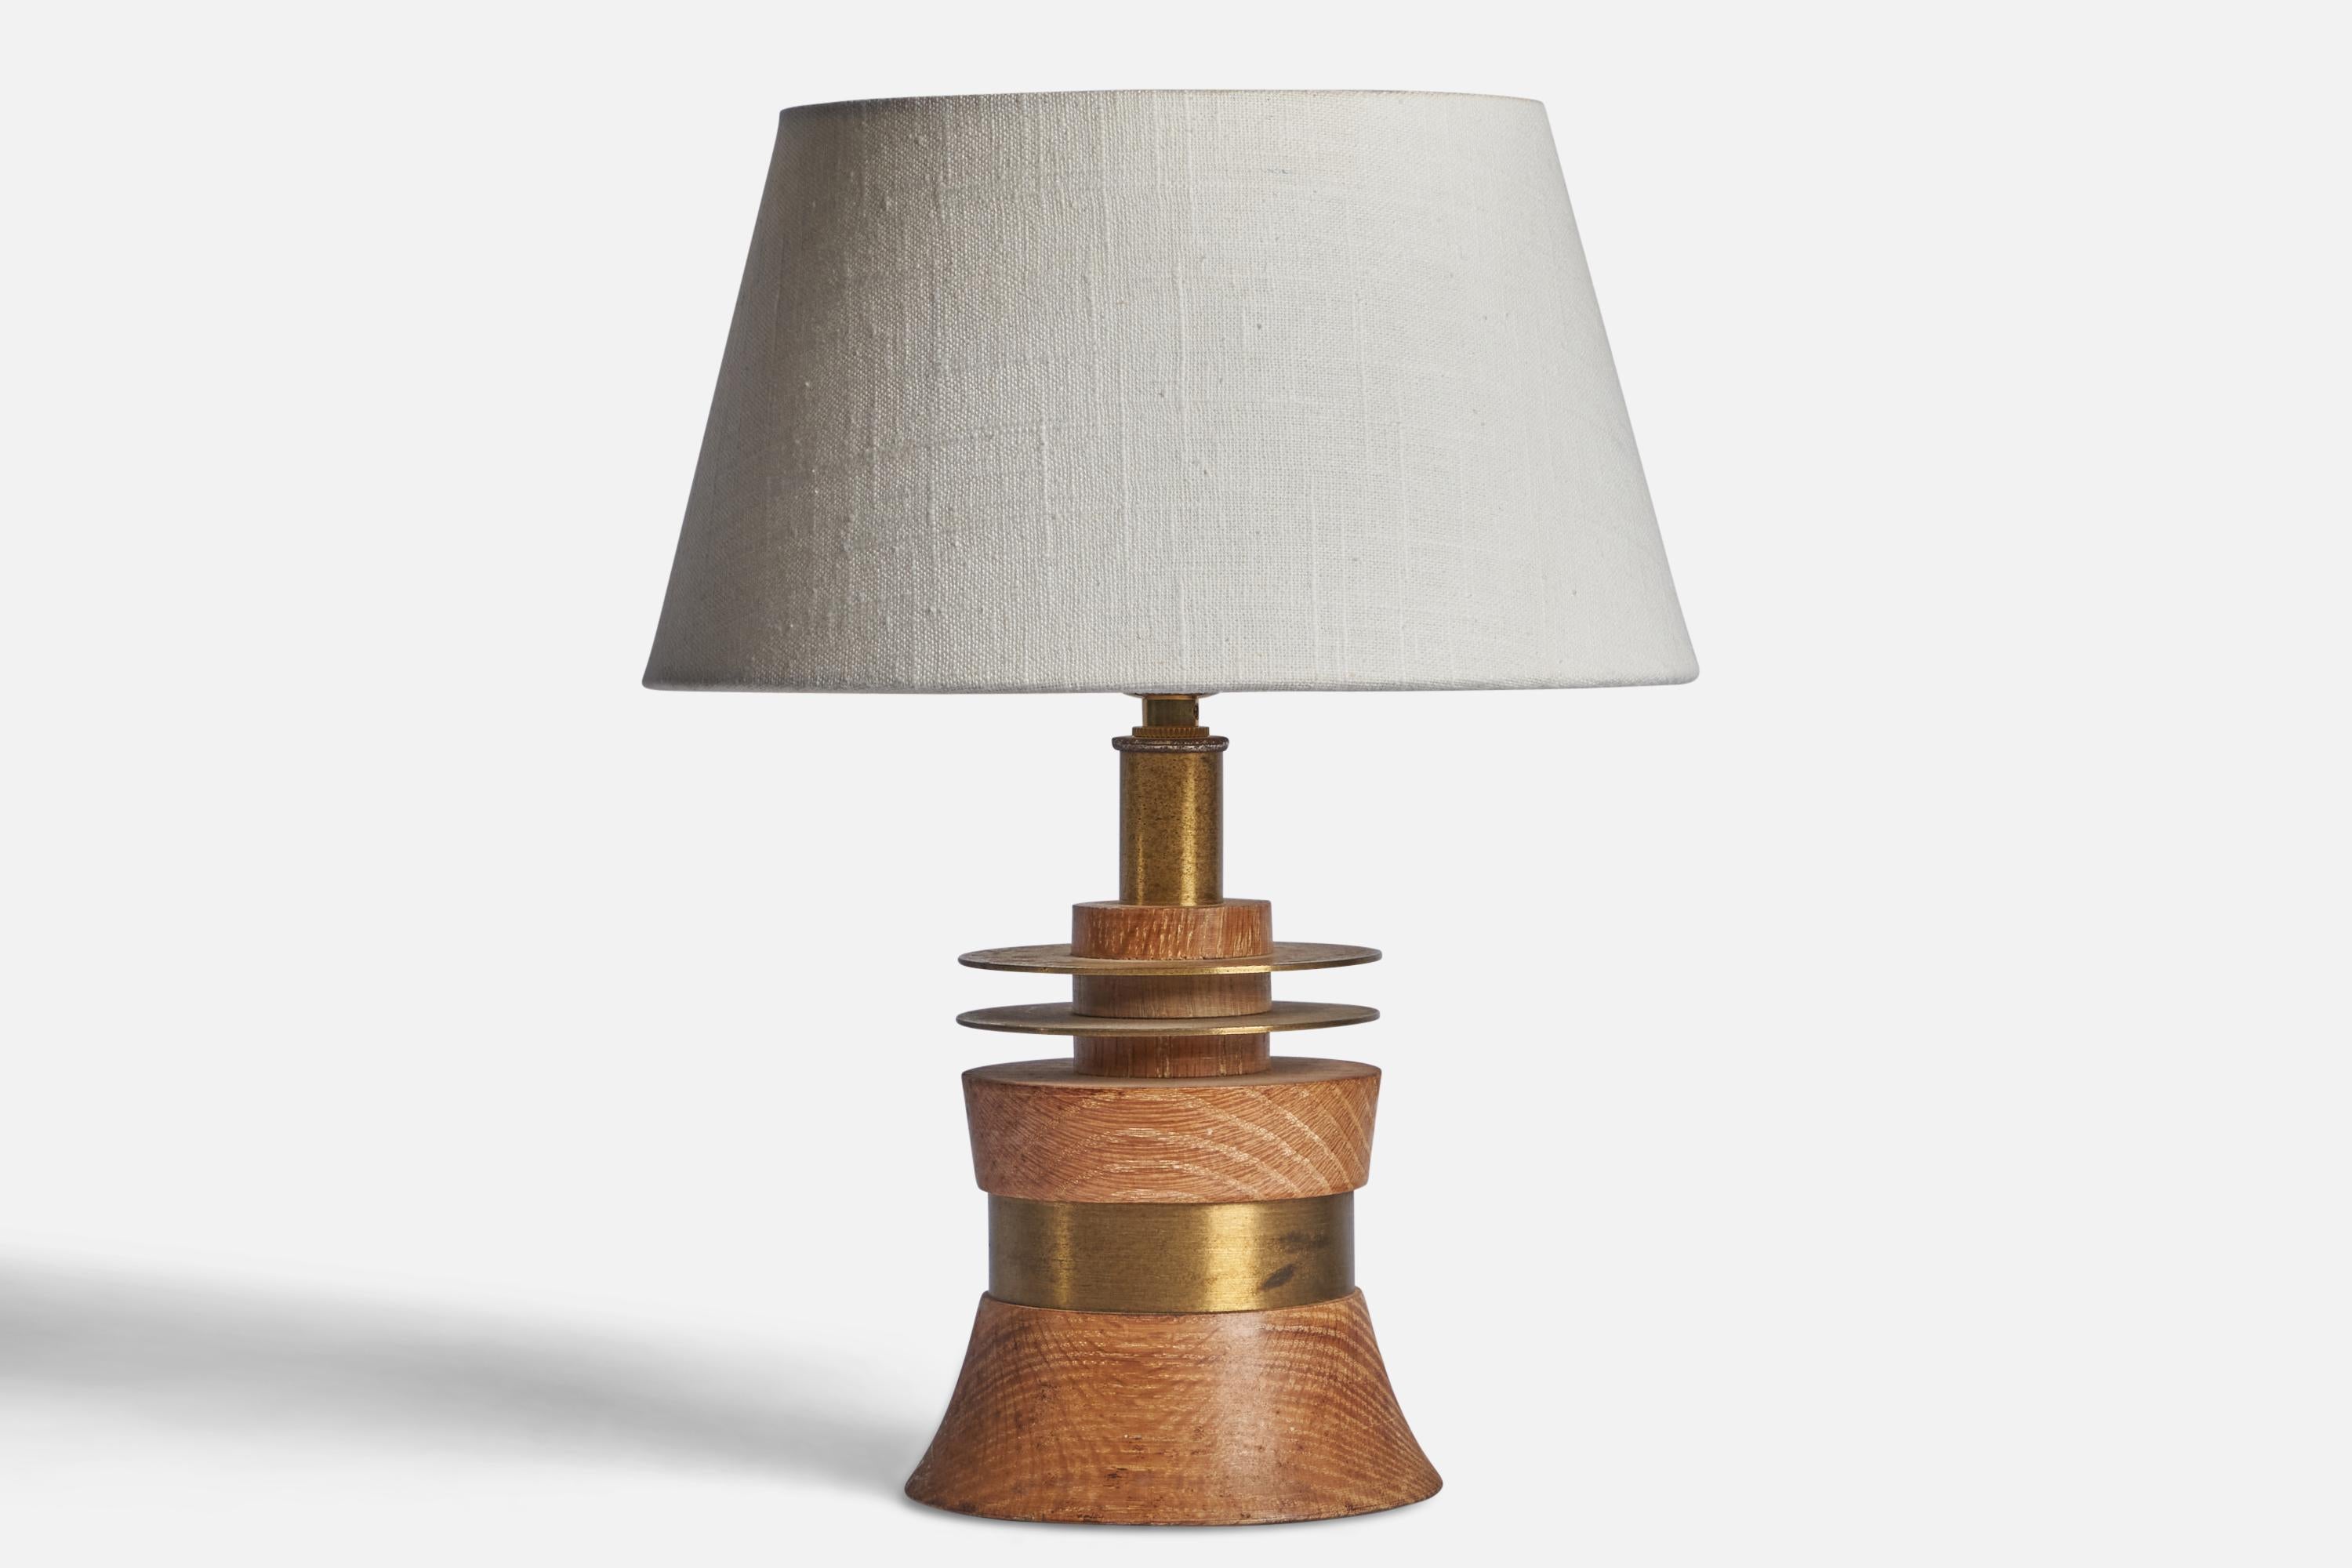 Lampe de table en laiton et en chêne conçue et produite aux États-Unis, années 1950.

Dimensions de la lampe (pouces) : 10